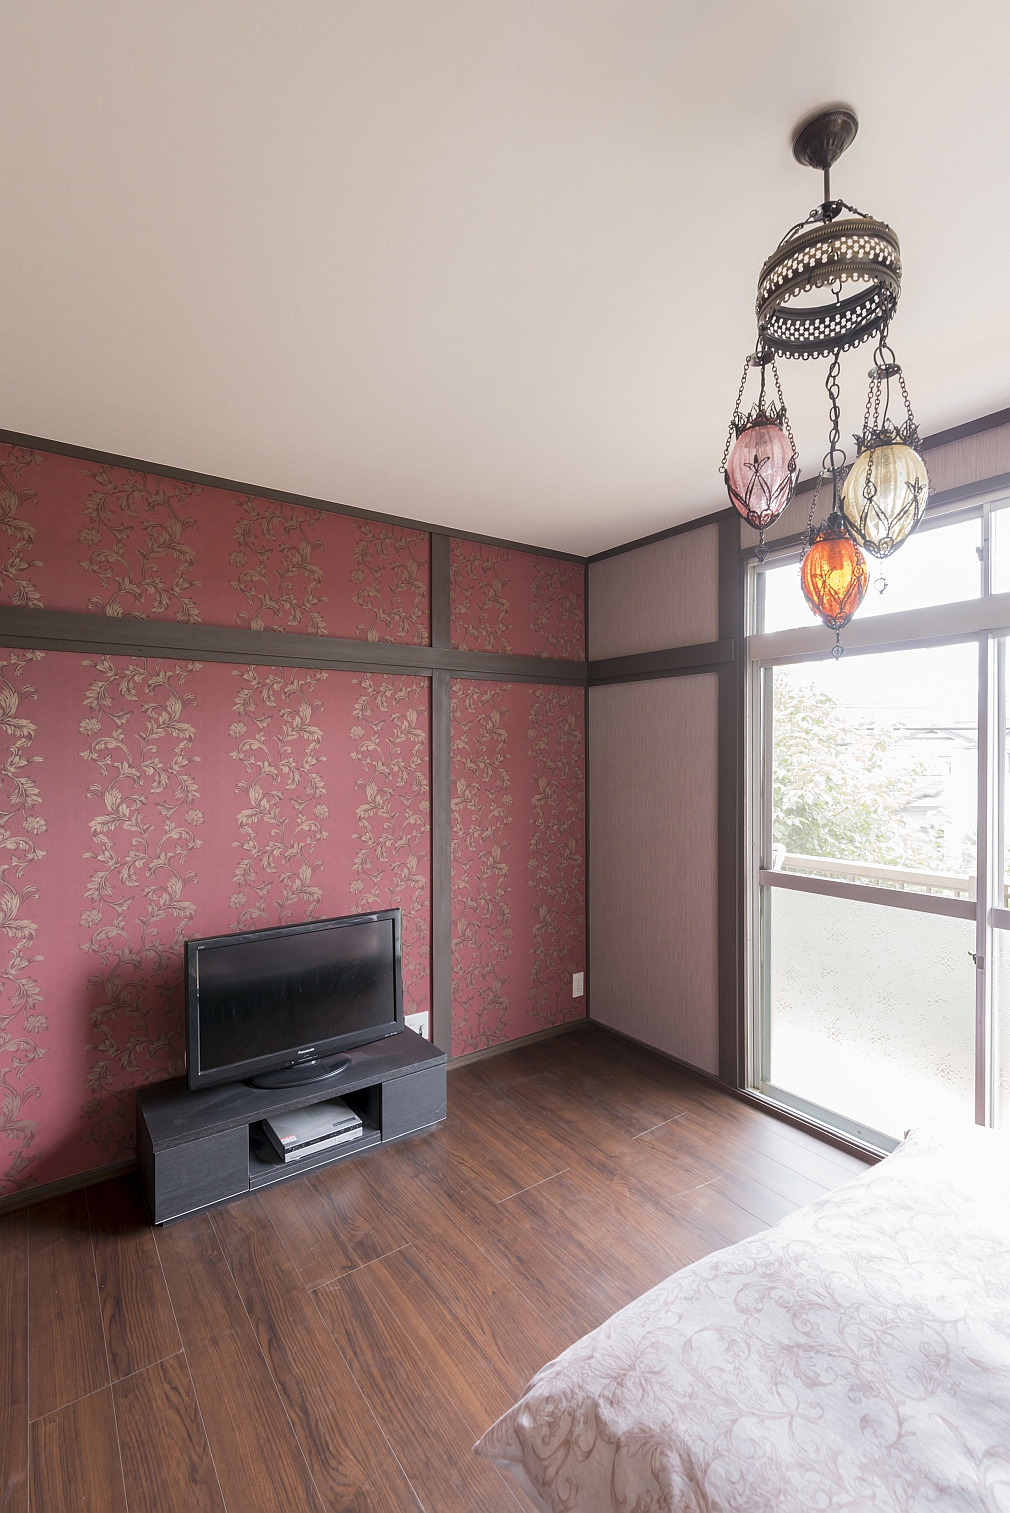 アンティークカラーの壁紙が印象的なリビング階段の家 戸建て住宅のリノベーション 神奈川 横浜 相模原エリアの注文住宅ならビルドアート